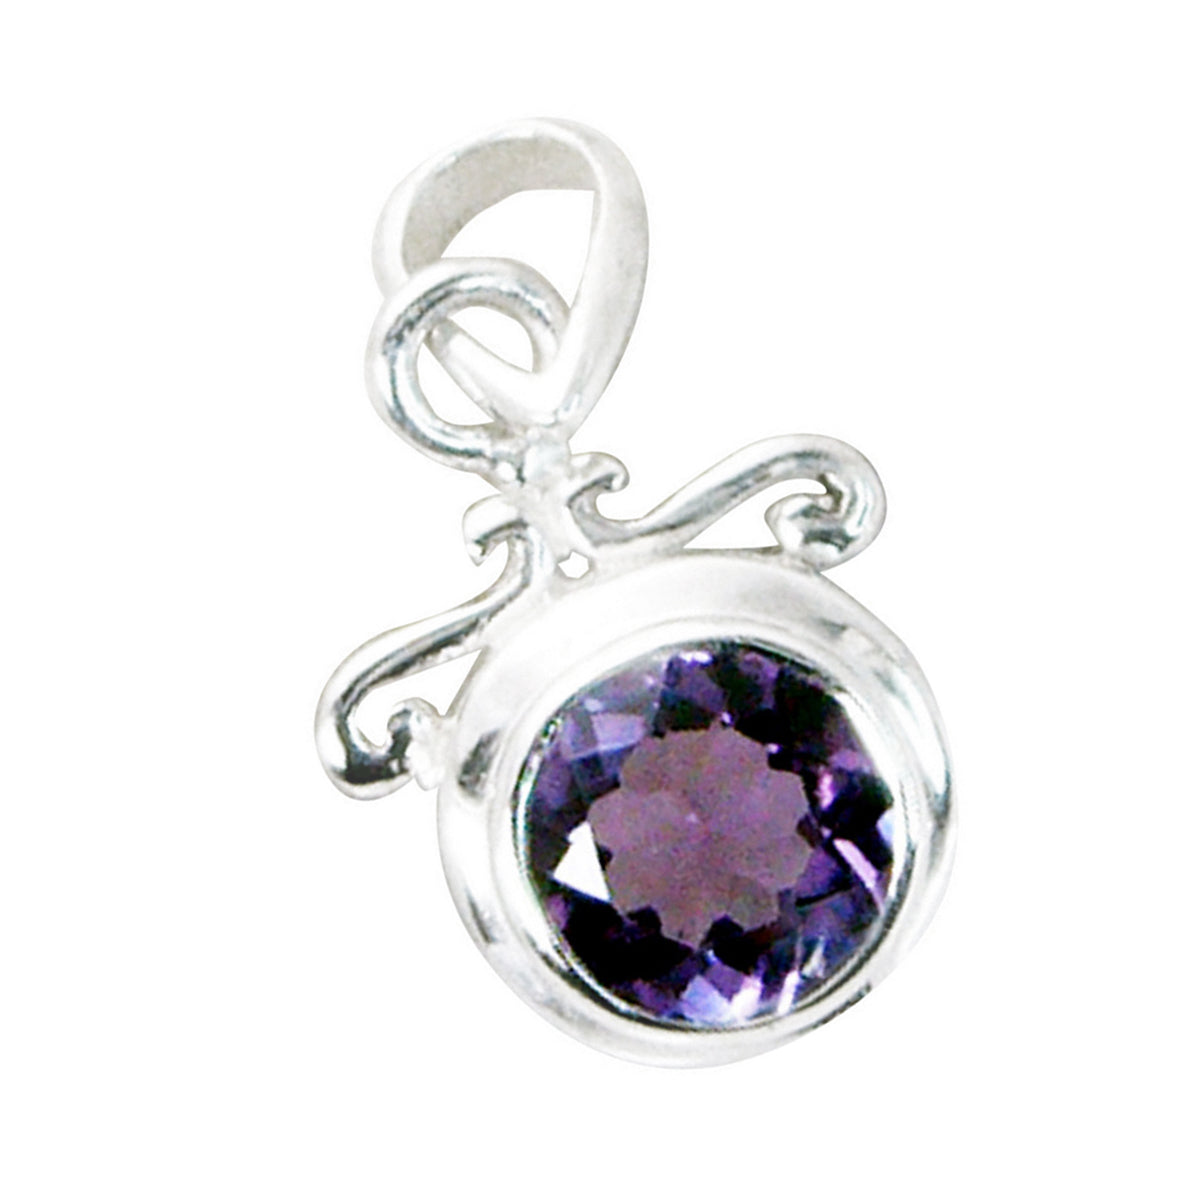 riyo великолепный драгоценный камень круглый граненый фиолетовый аметист 953 пробы серебряный кулон подарок на день рождения